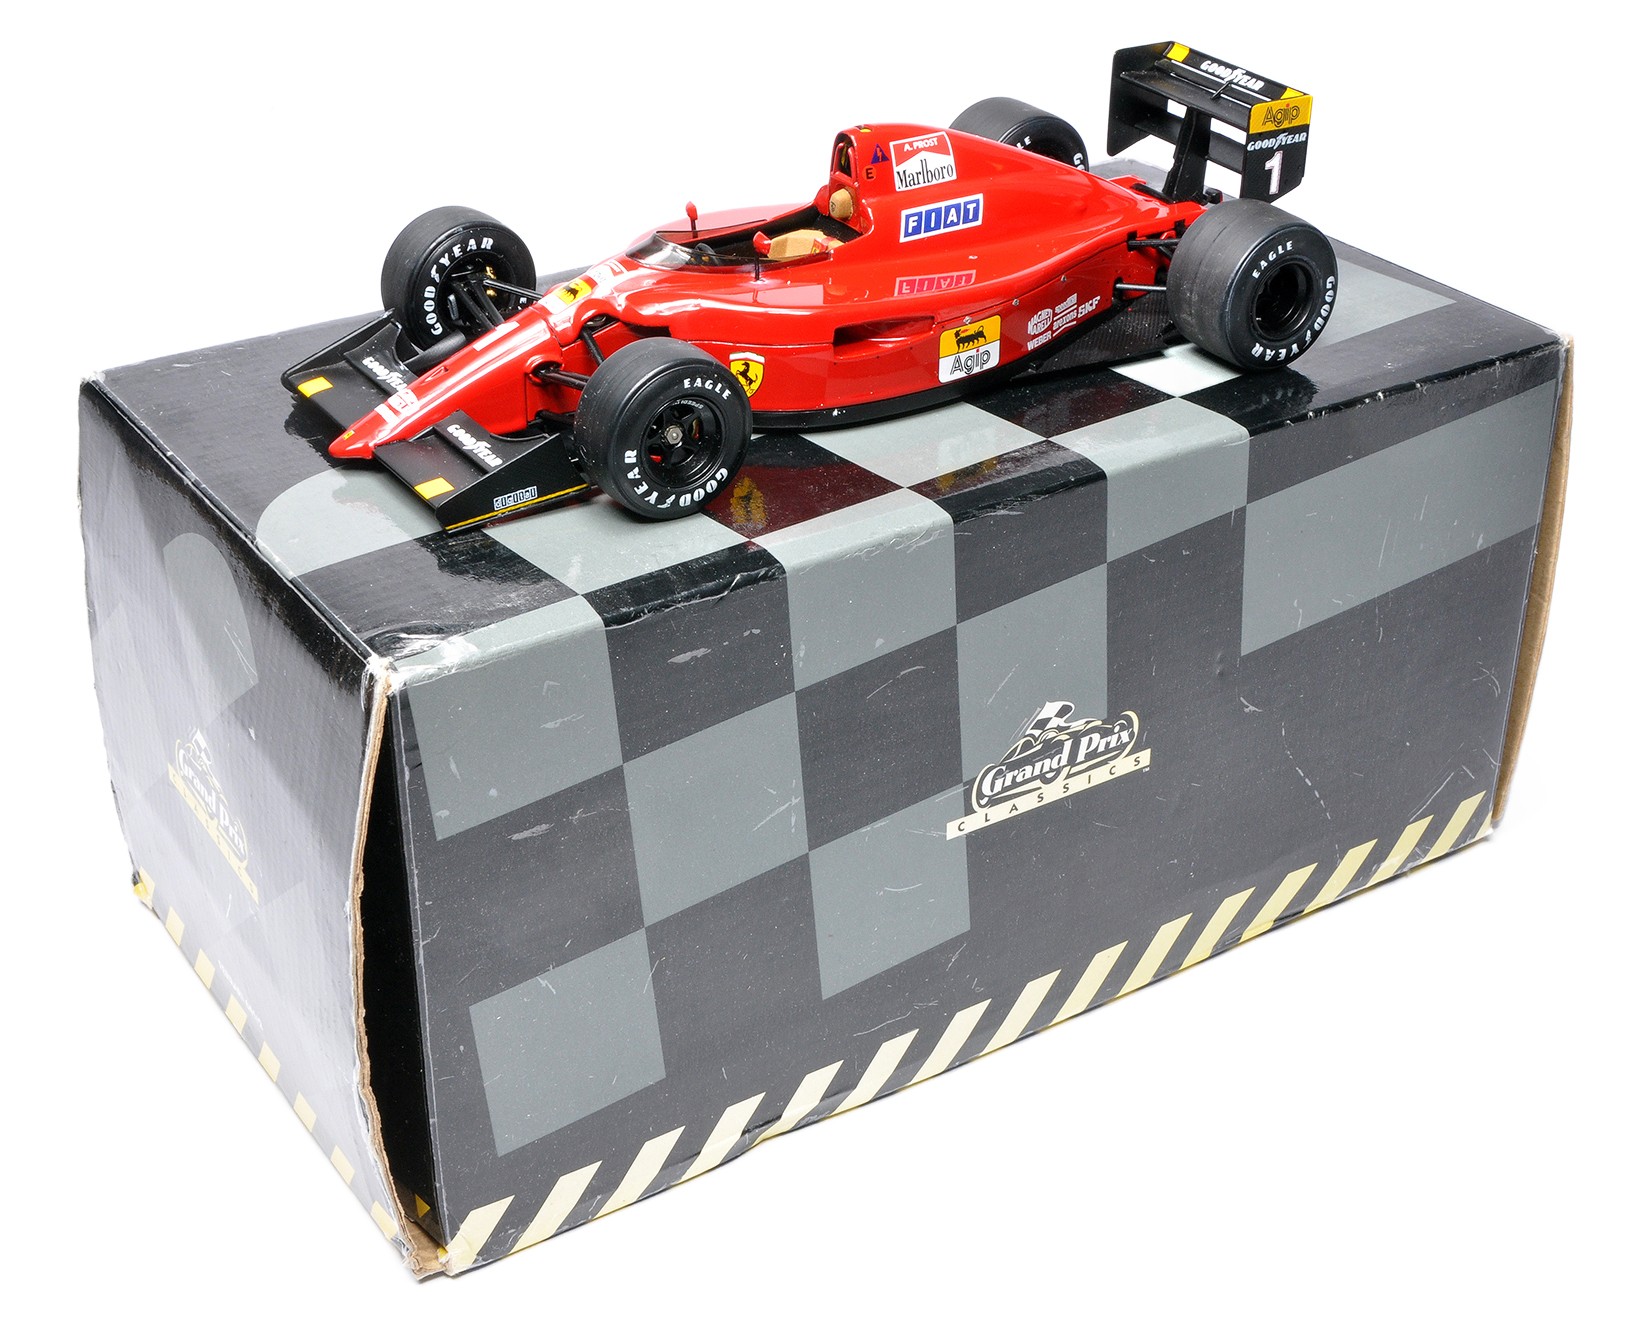 Exoto Grand Prix Classics 1/18 diecast model racing car issue comprising Ferrari 641/2 Formula